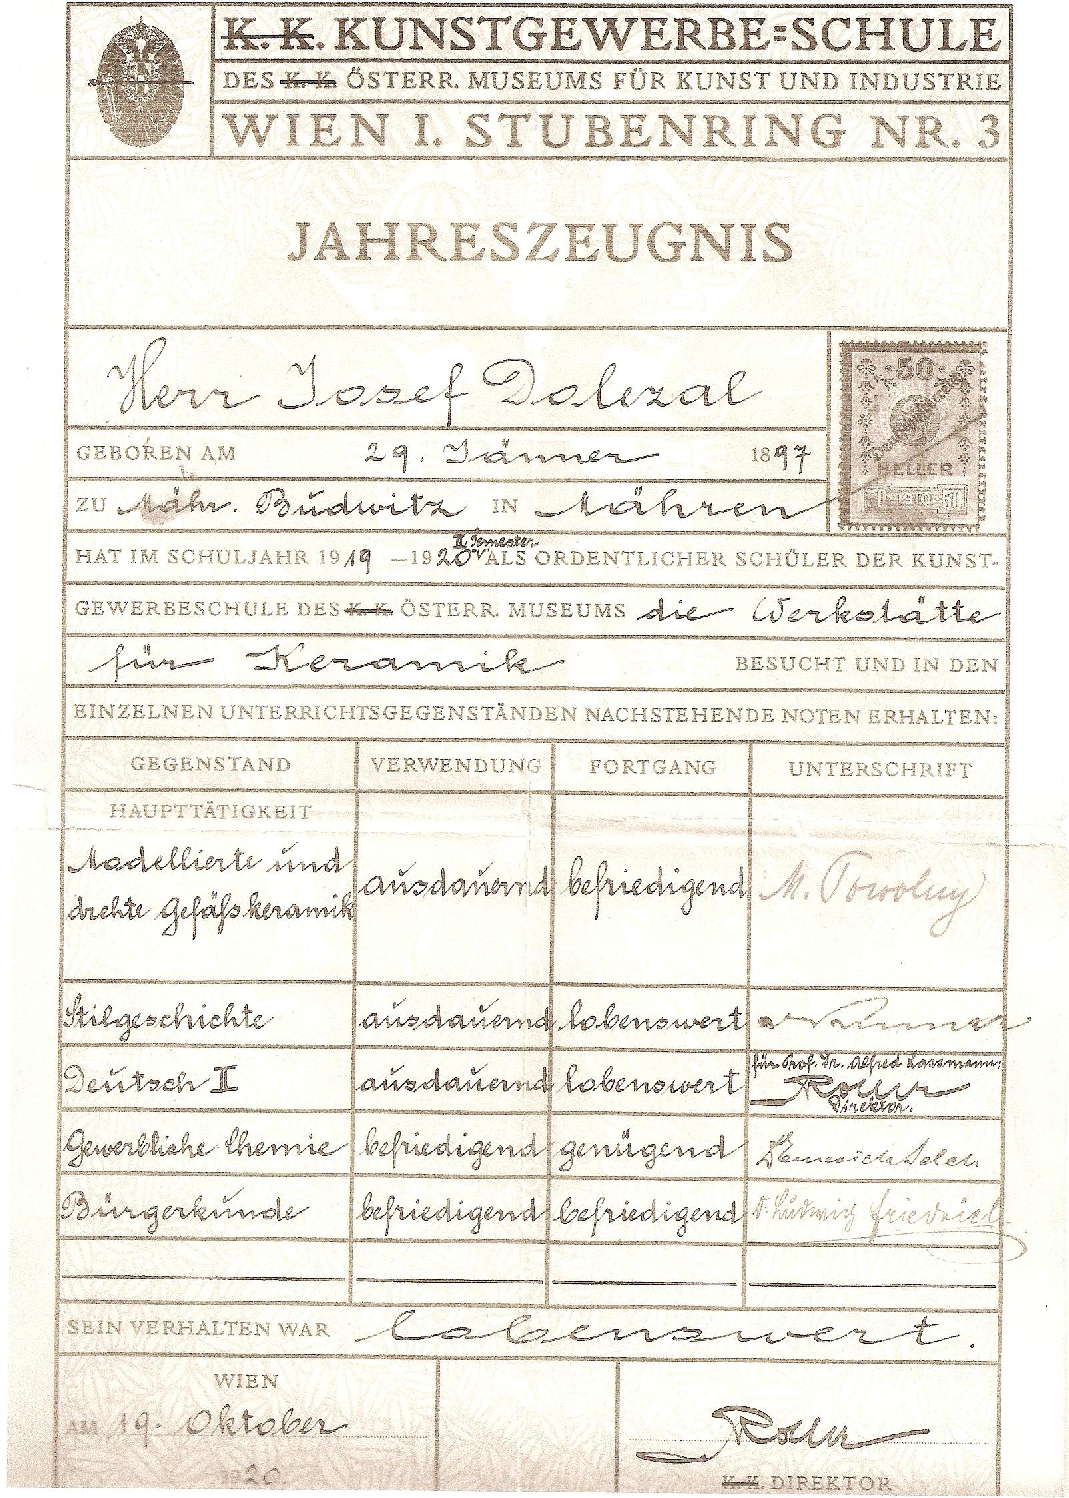 Kunstgewerbeschule Wien Jahreszeugnis 1919-1920